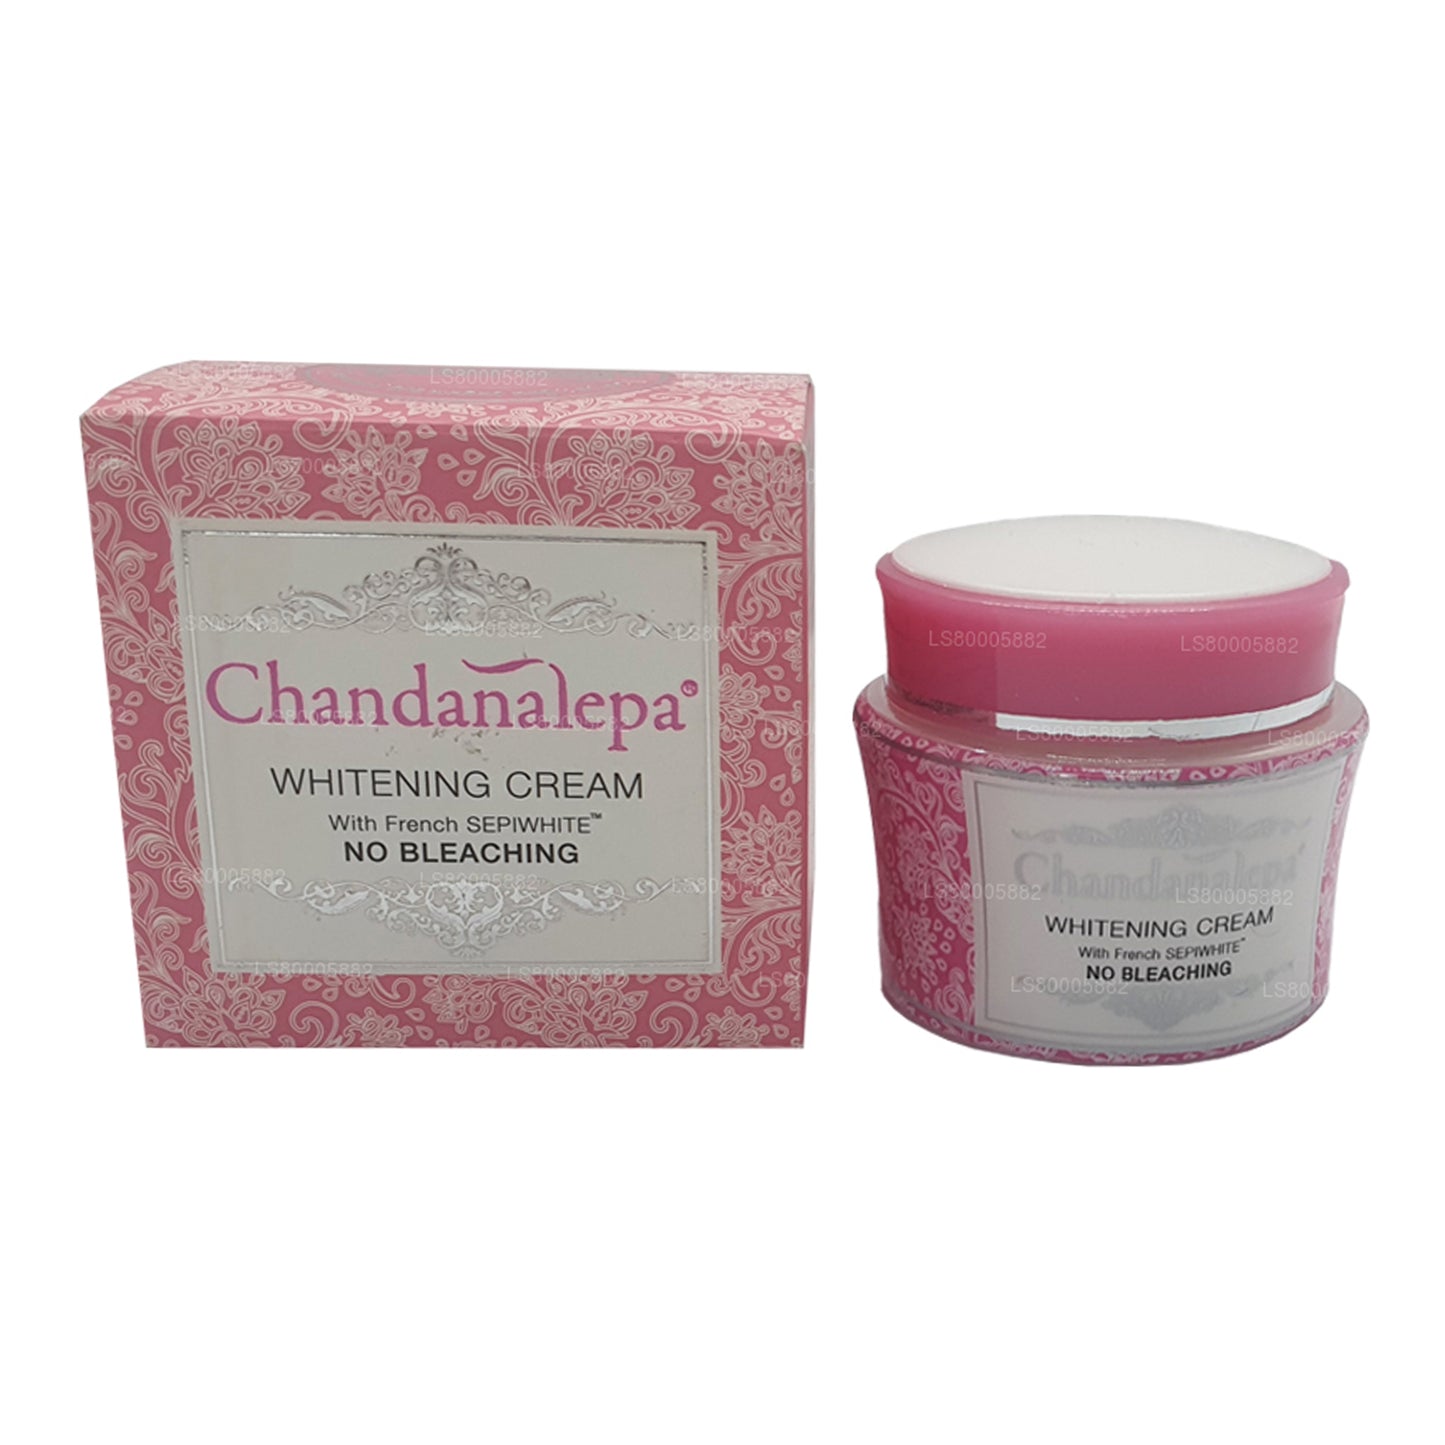 Chandanalepa Whitening Cream (20g)